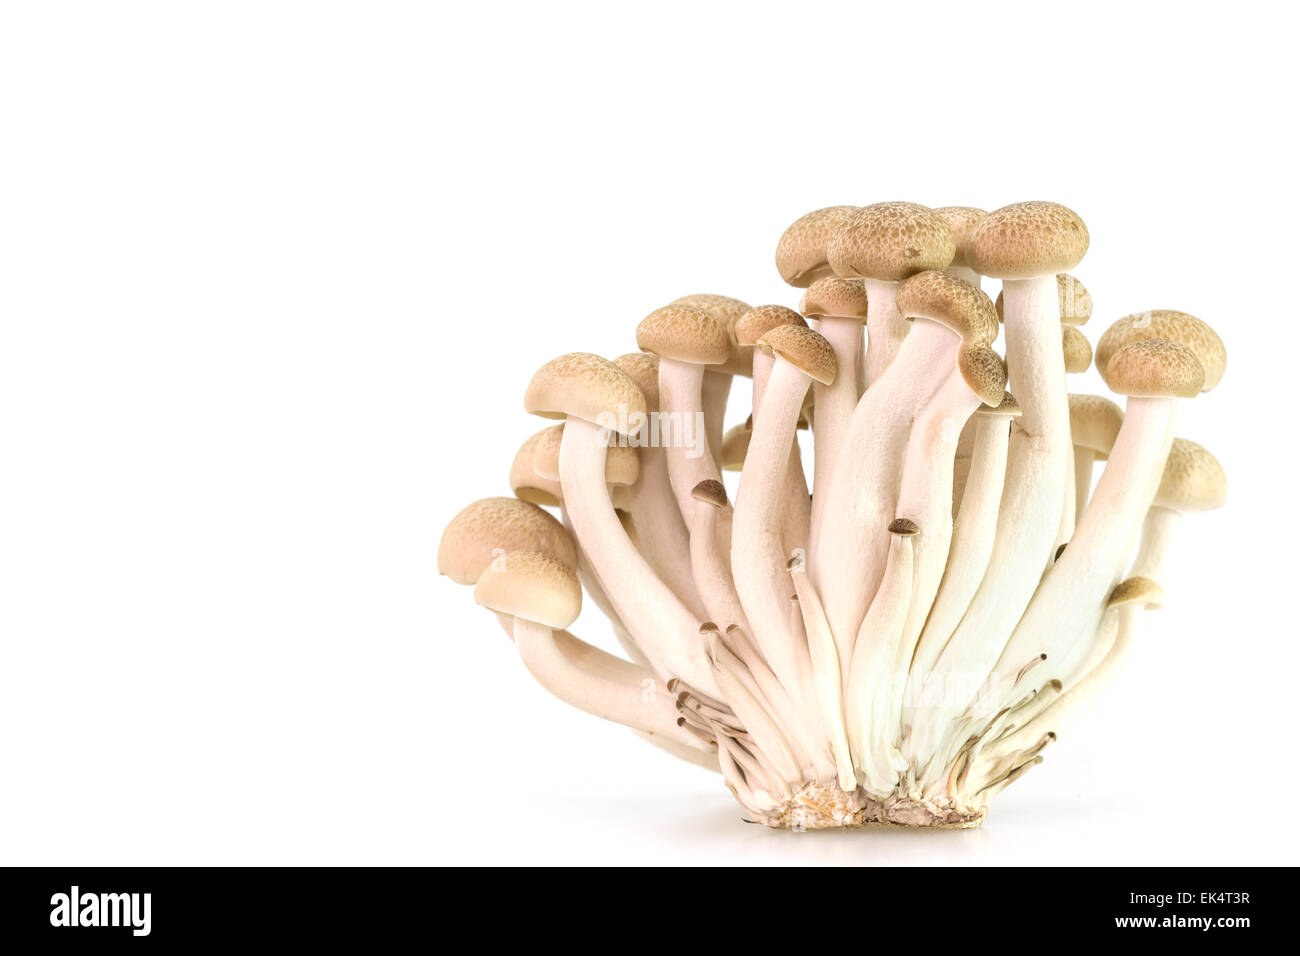 Marrone di funghi di faggio o funghi shimeji isolati su sfondo bianco Foto Stock